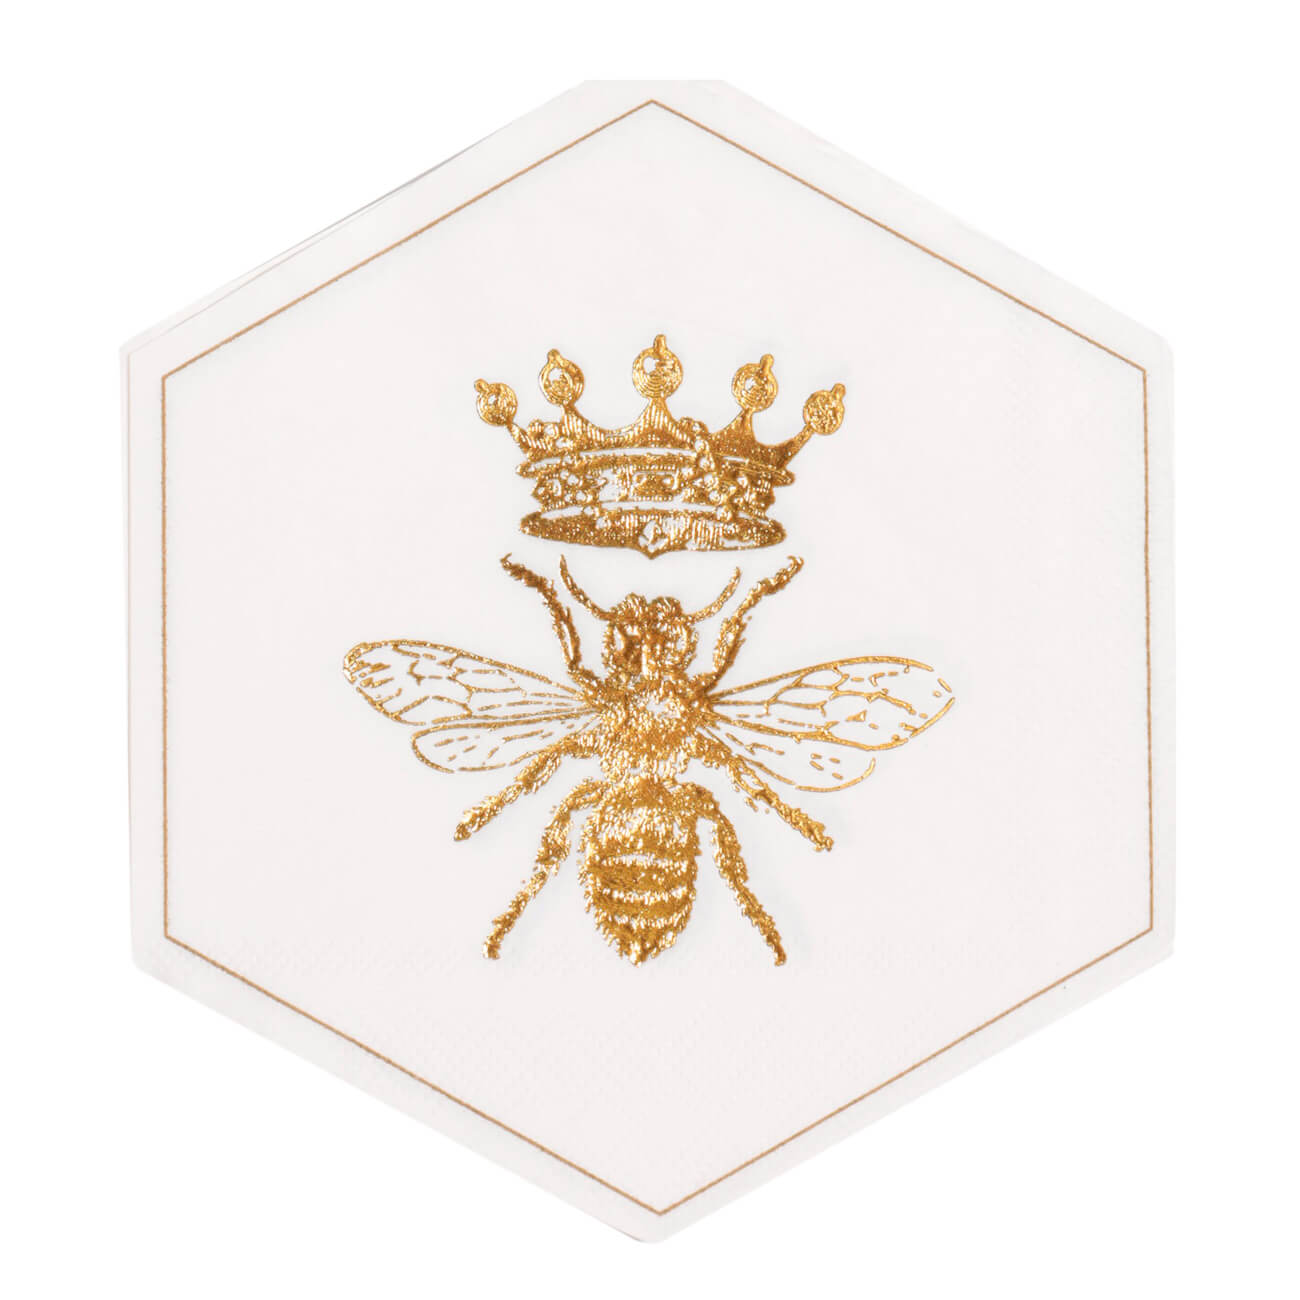 Салфетки бумажные, 32 см, 20 шт, фигурные, белые, Пчела, Honey салфетки paclan 410129